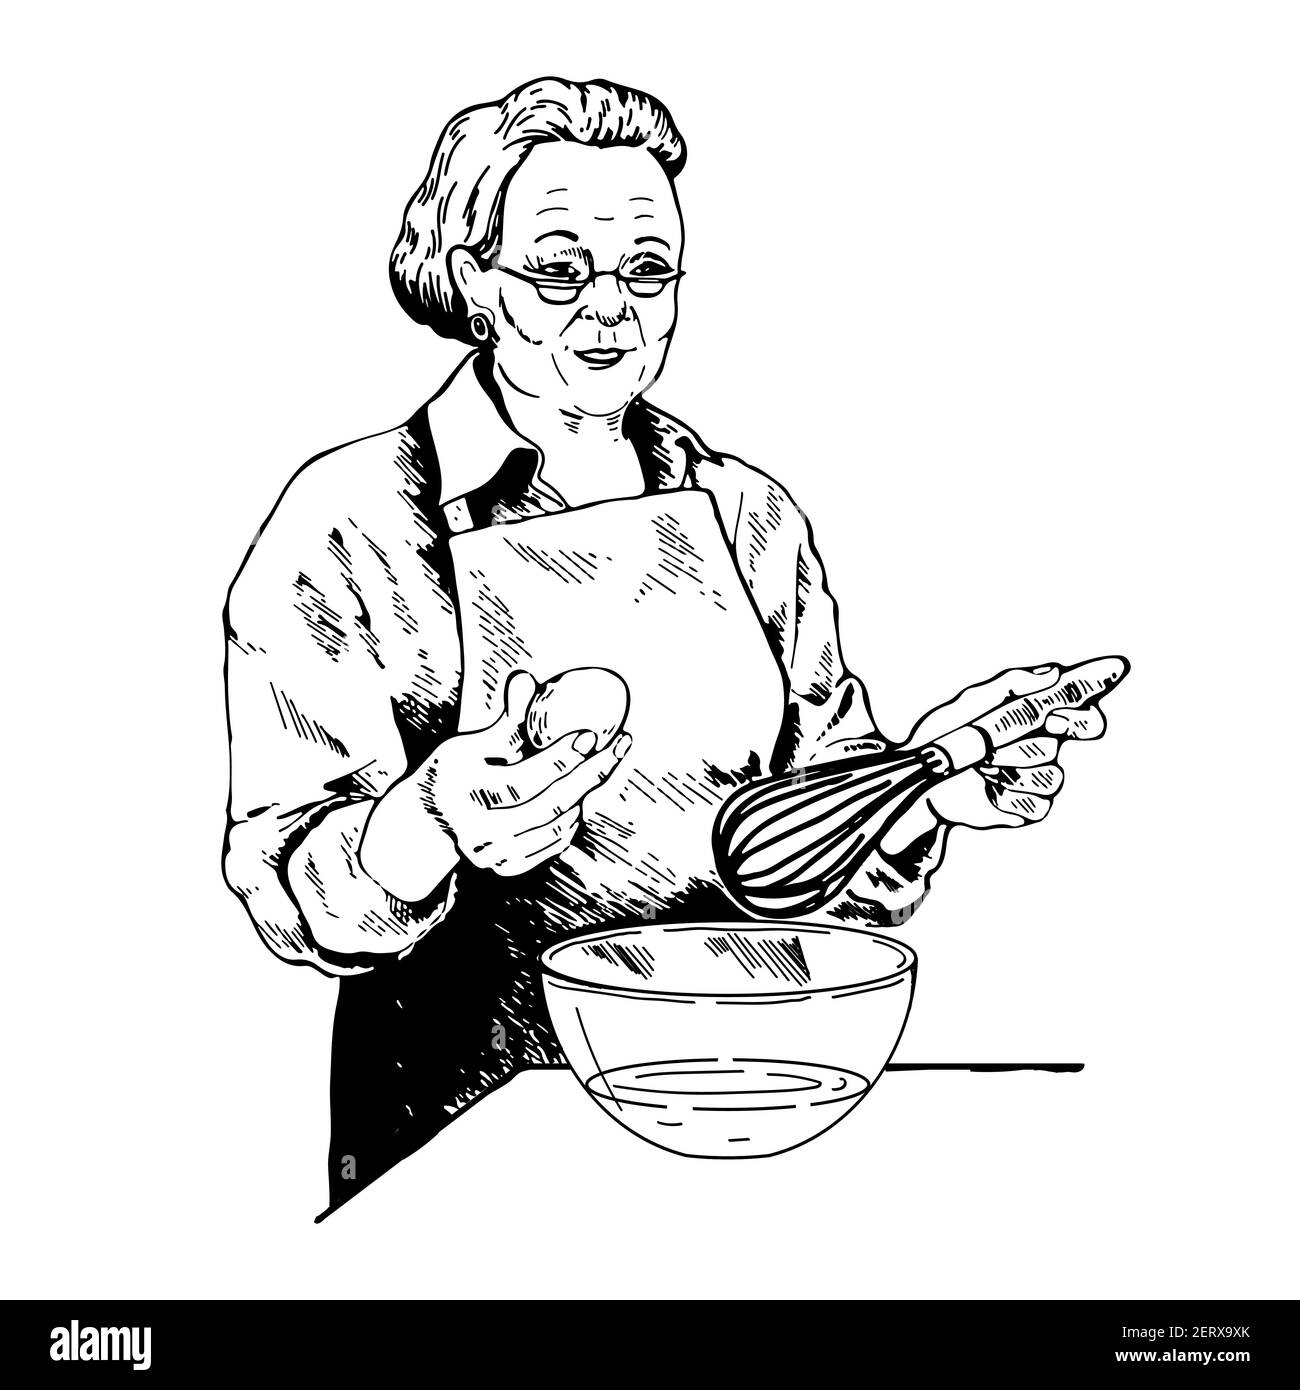 Nonna che tiene in mano un frusta e un uovo, preparandosi a fare l'impasto, maionese, illustrazione cream.Vector, schizzo bianco e nero, linea Illustrazione Vettoriale